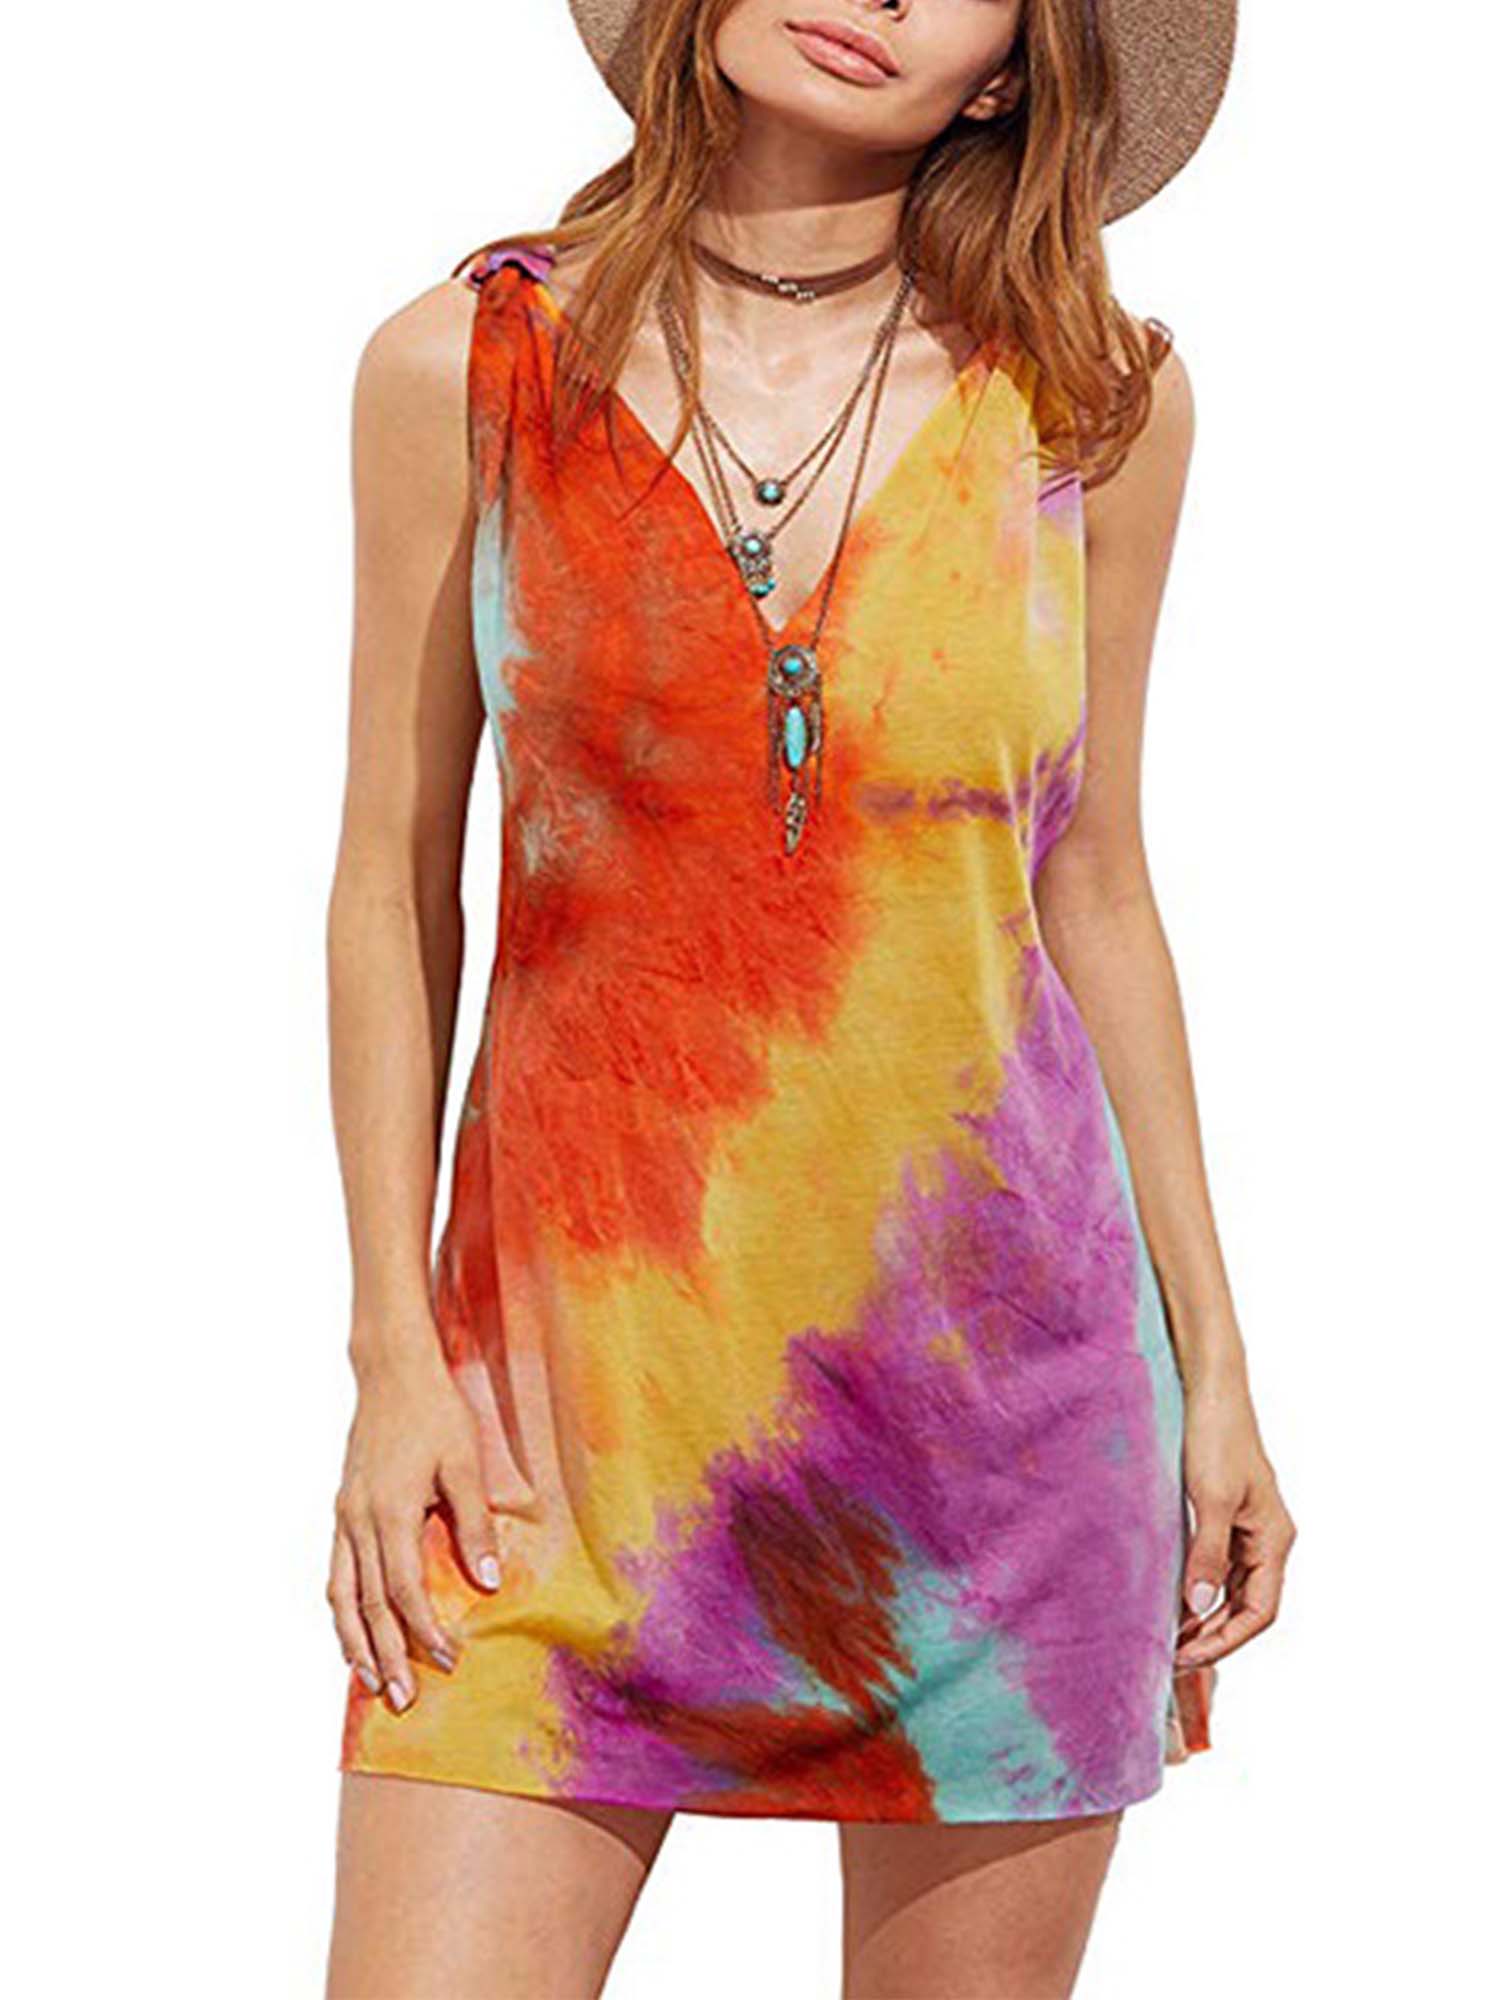 Womens Tie Dye Sleeveless Vest Dress Casual Summer Beach Loose Tank Top Sundress